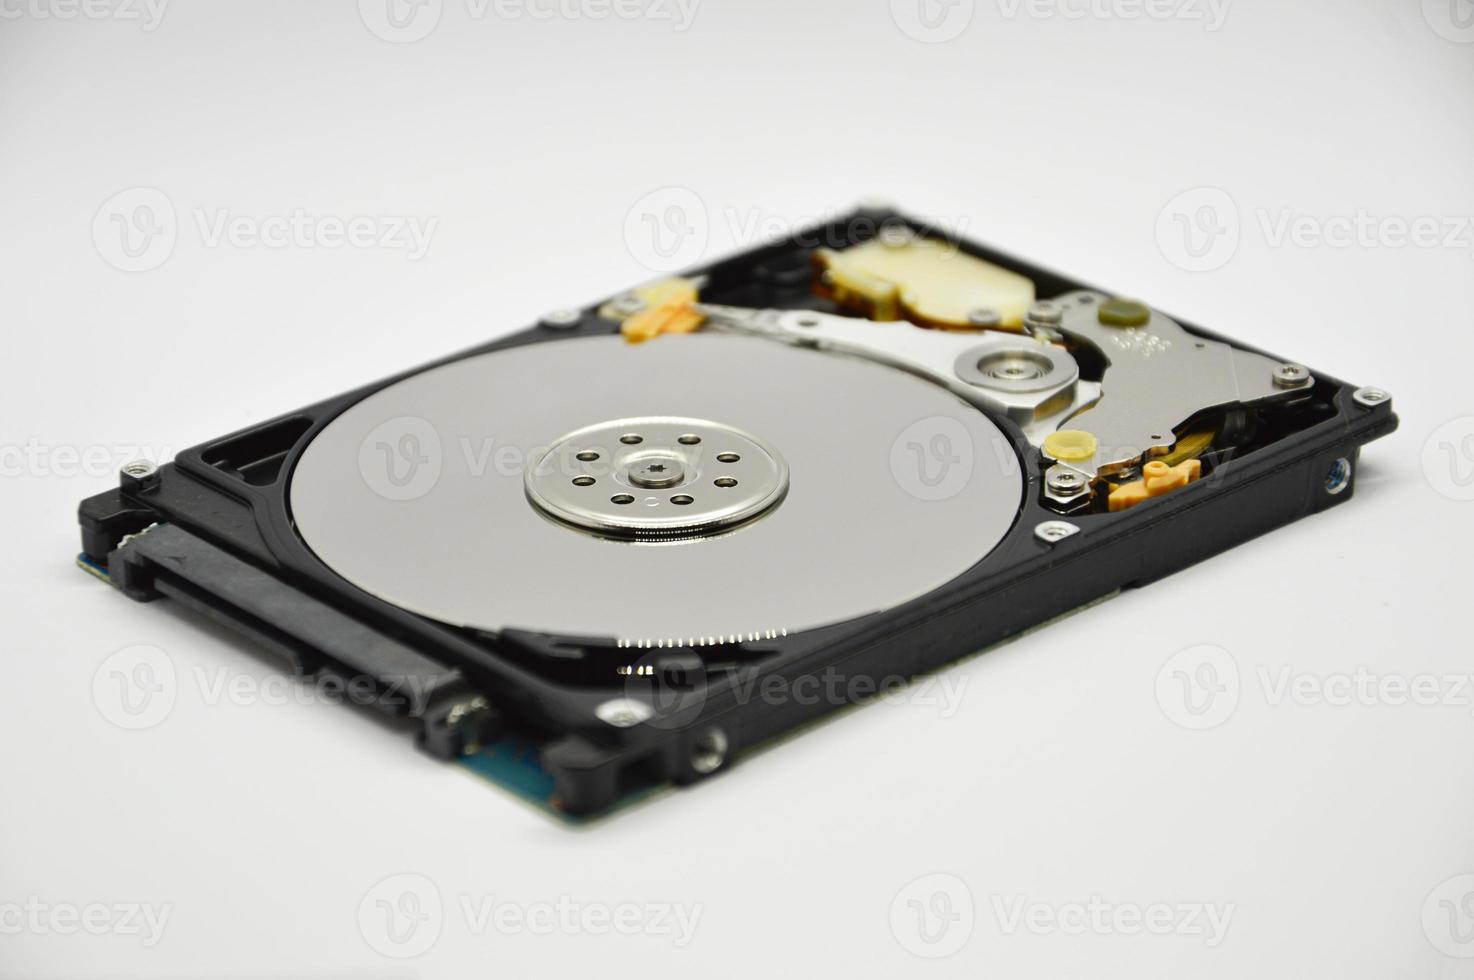 Les images de disque dur de type disque rotatif de 2,5 pouces sont encore couramment utilisées aujourd'hui. photo